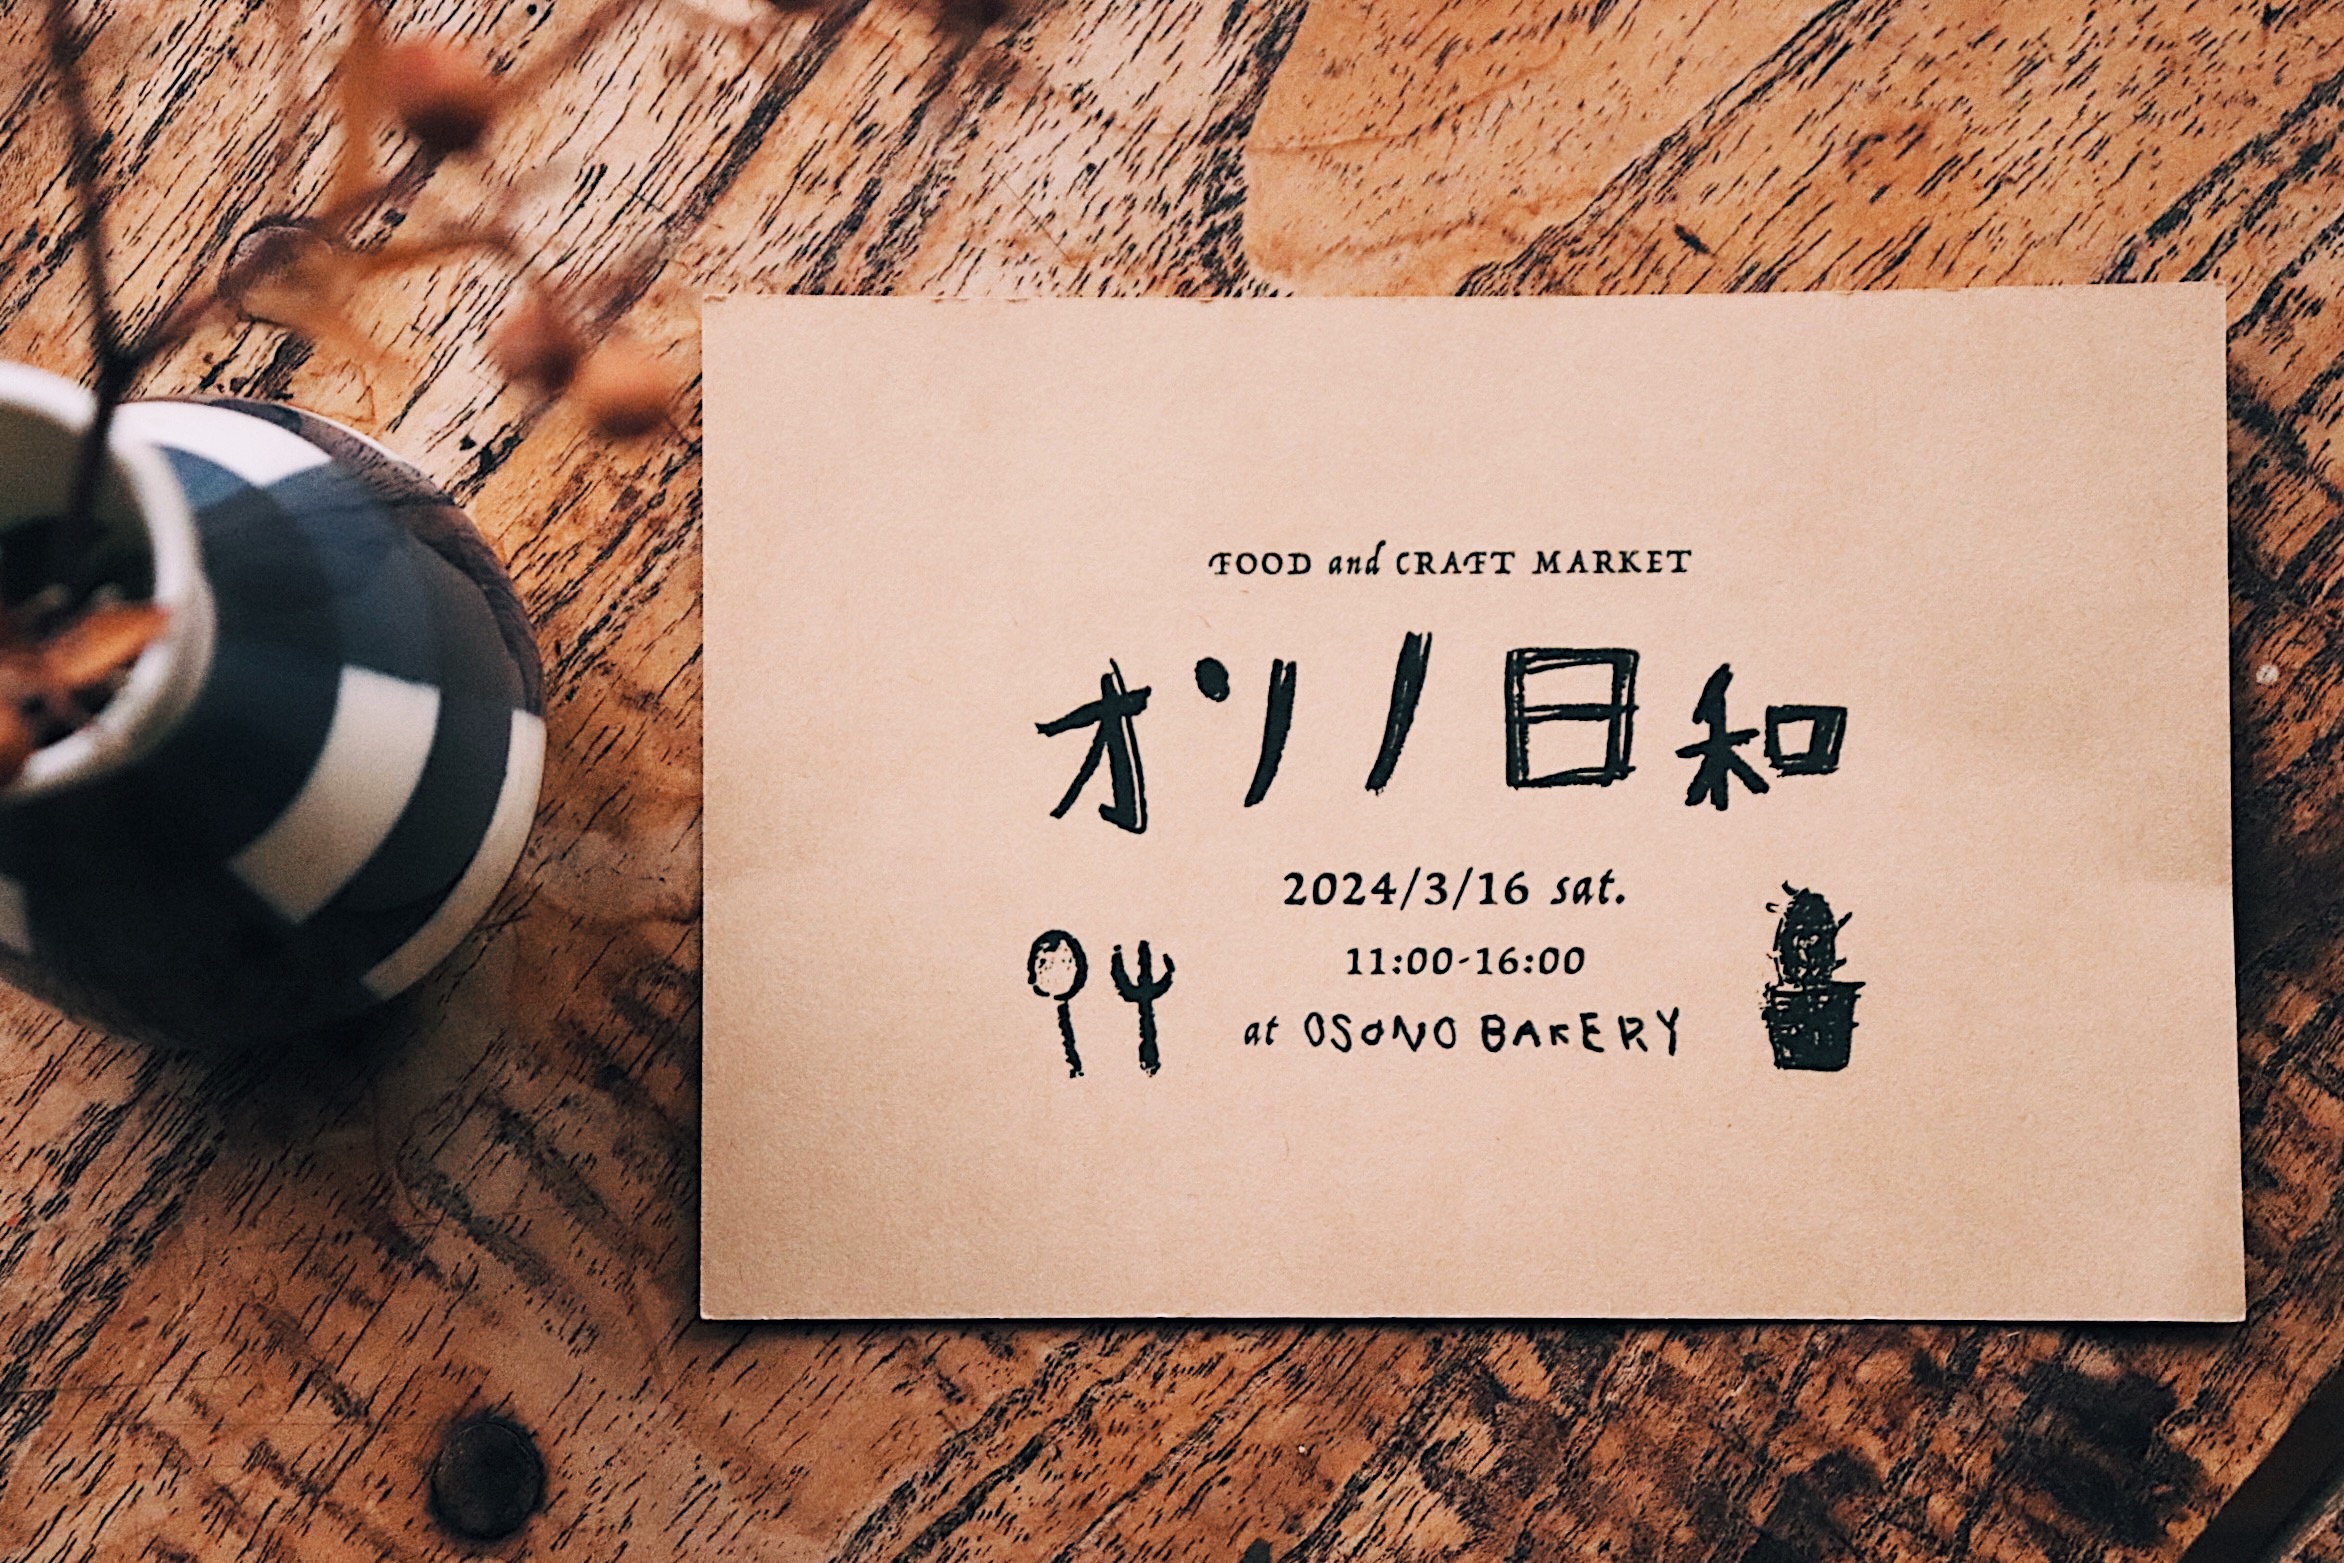 【EVENT】3月16日「オソノ日和」を開催します。